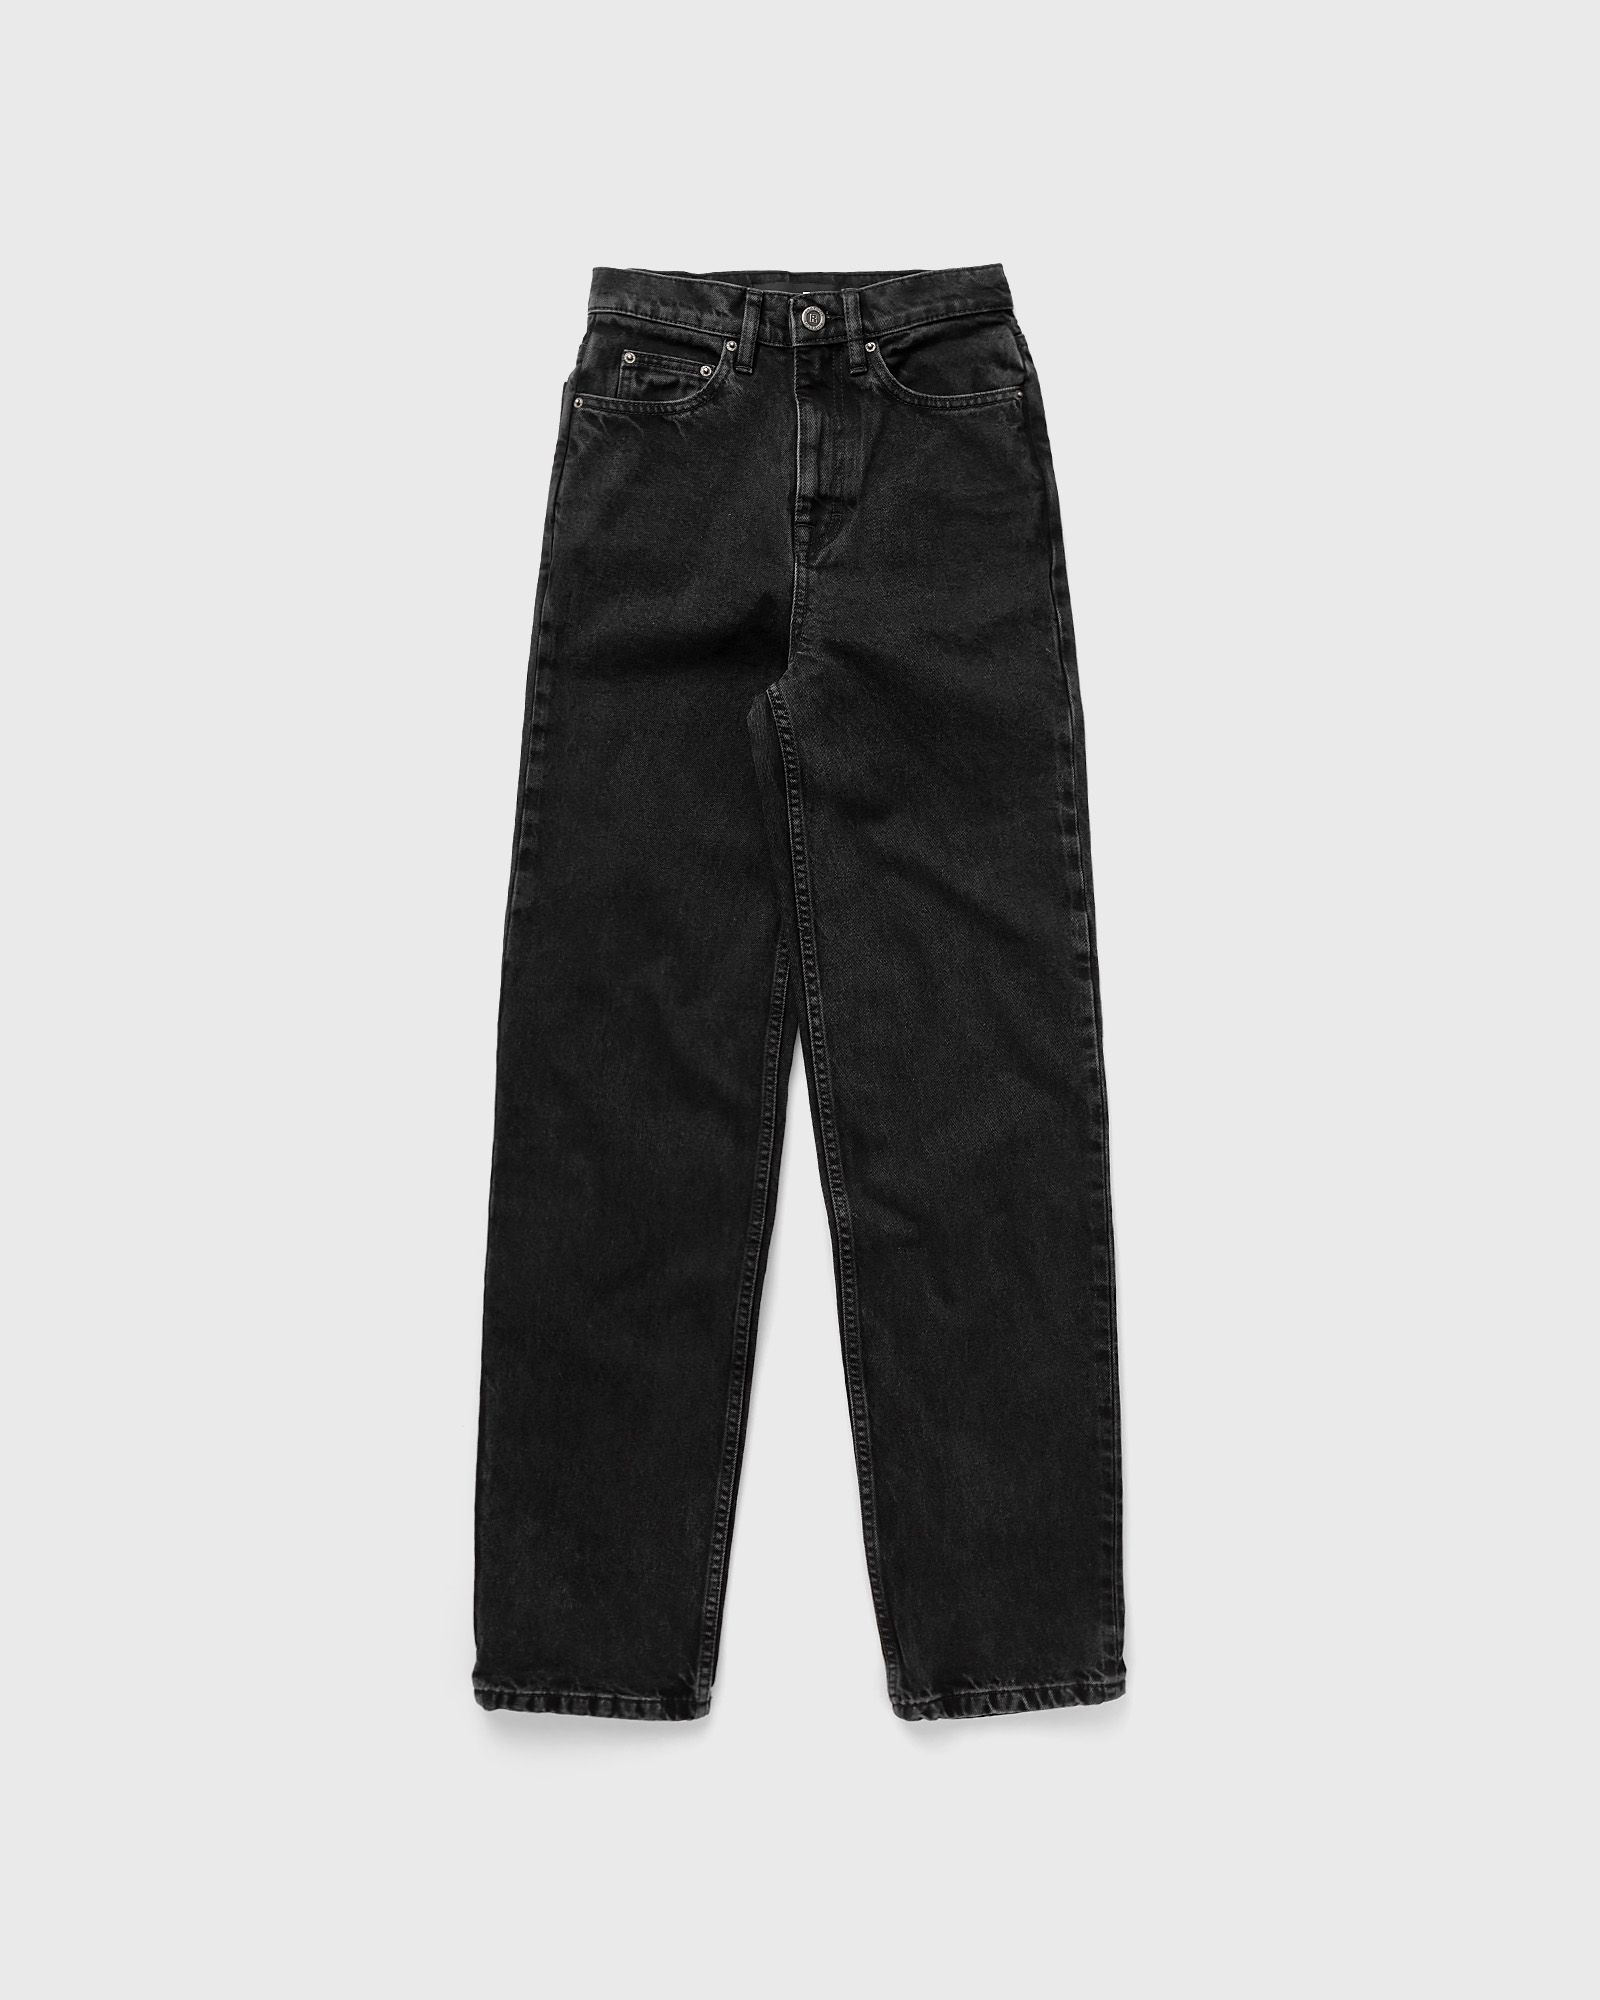 ROTATE Birger Christensen - washed denim jeans women jeans black in größe:m